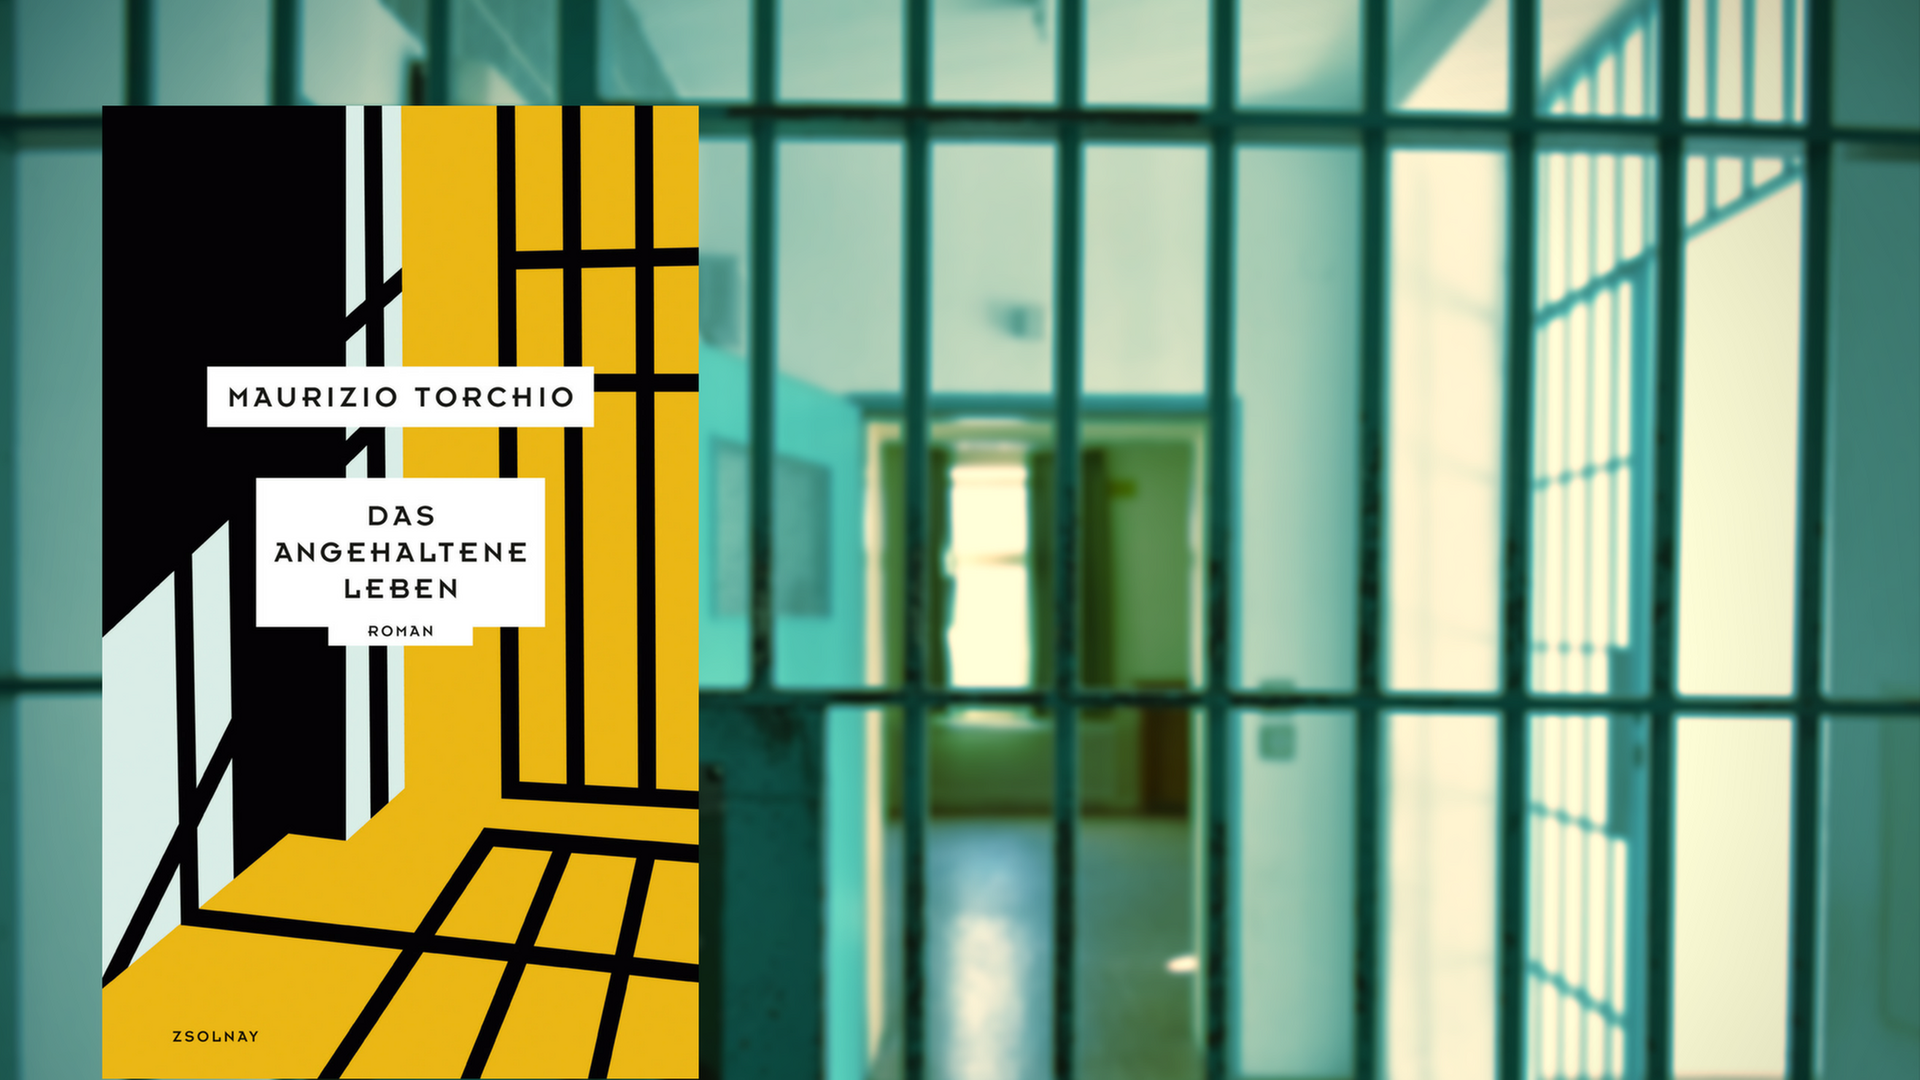 Buchcover Maurizio Torchio "Das angehaltene Leben", im Hintergrund Gefängnisflur, fotografiert durch ein Gitter.